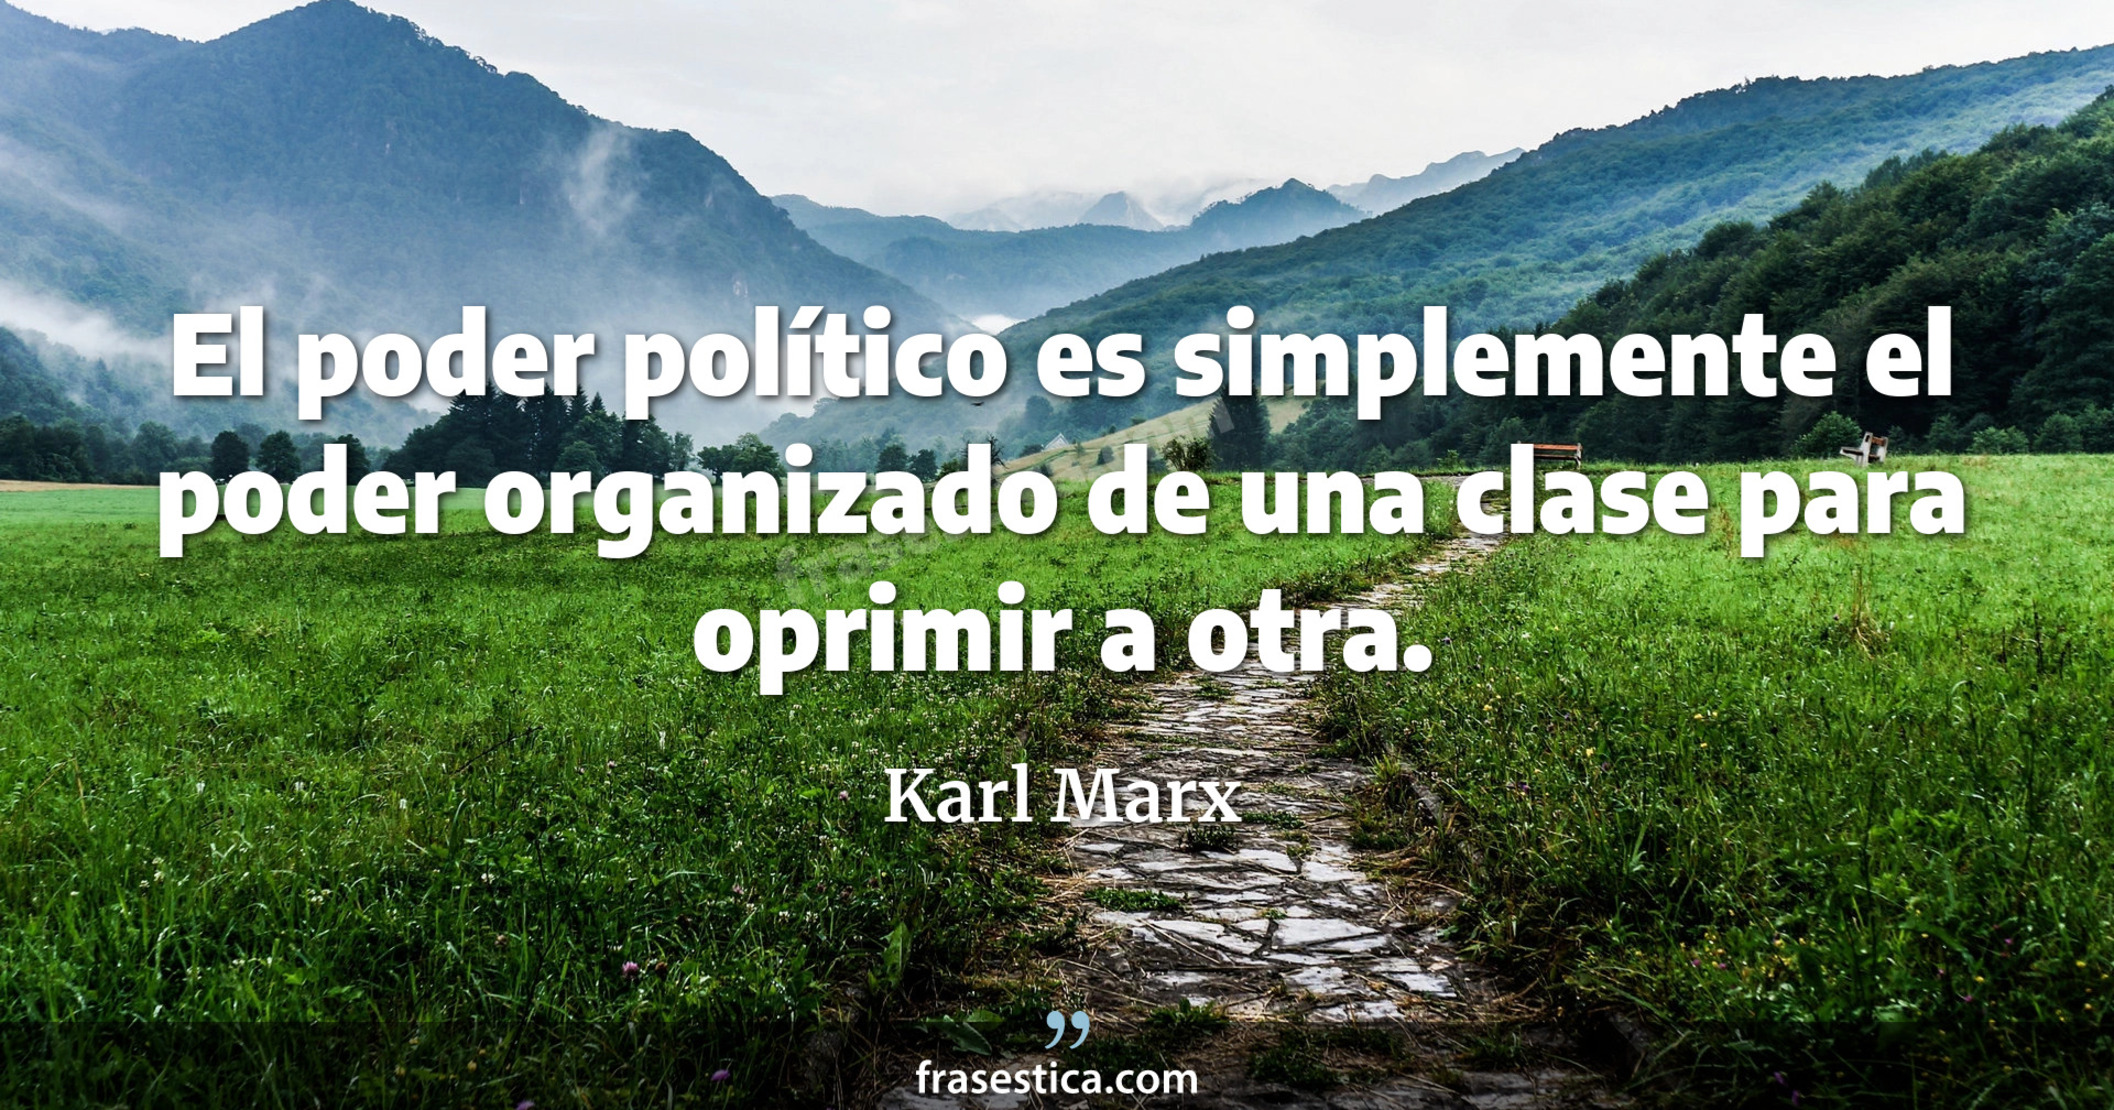 El poder político es simplemente el poder organizado de una clase para oprimir a otra. - Karl Marx